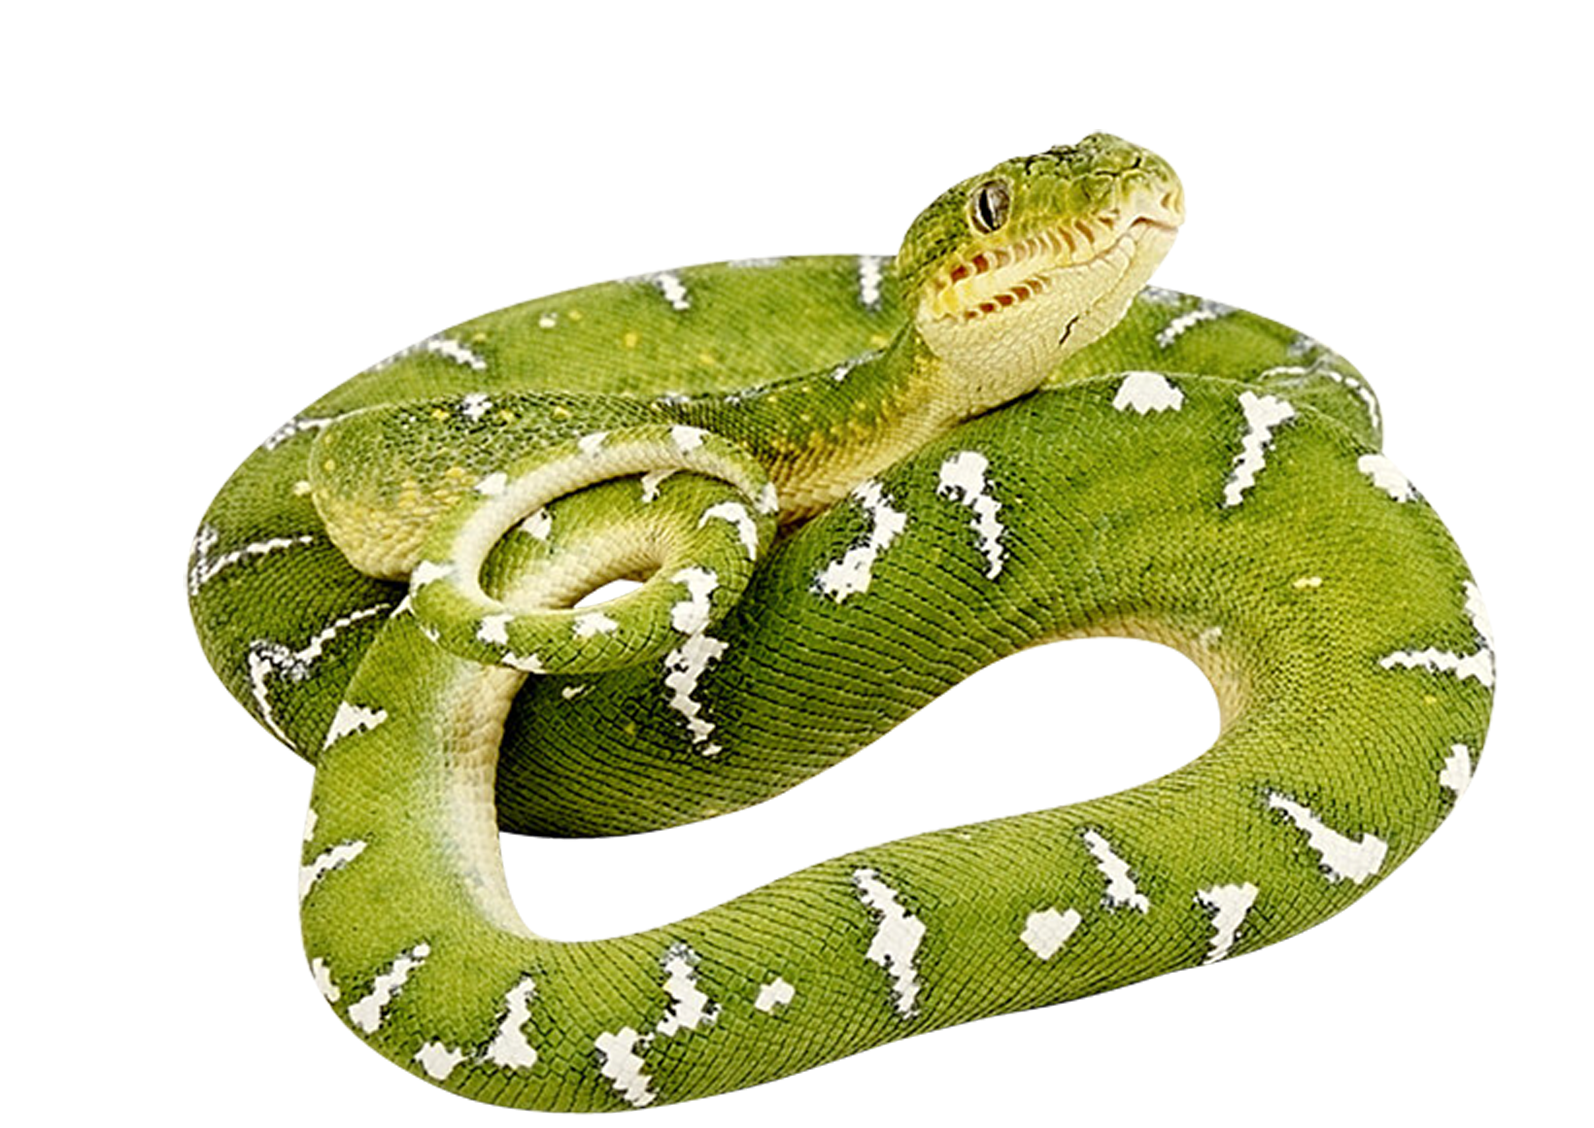 a green snake.